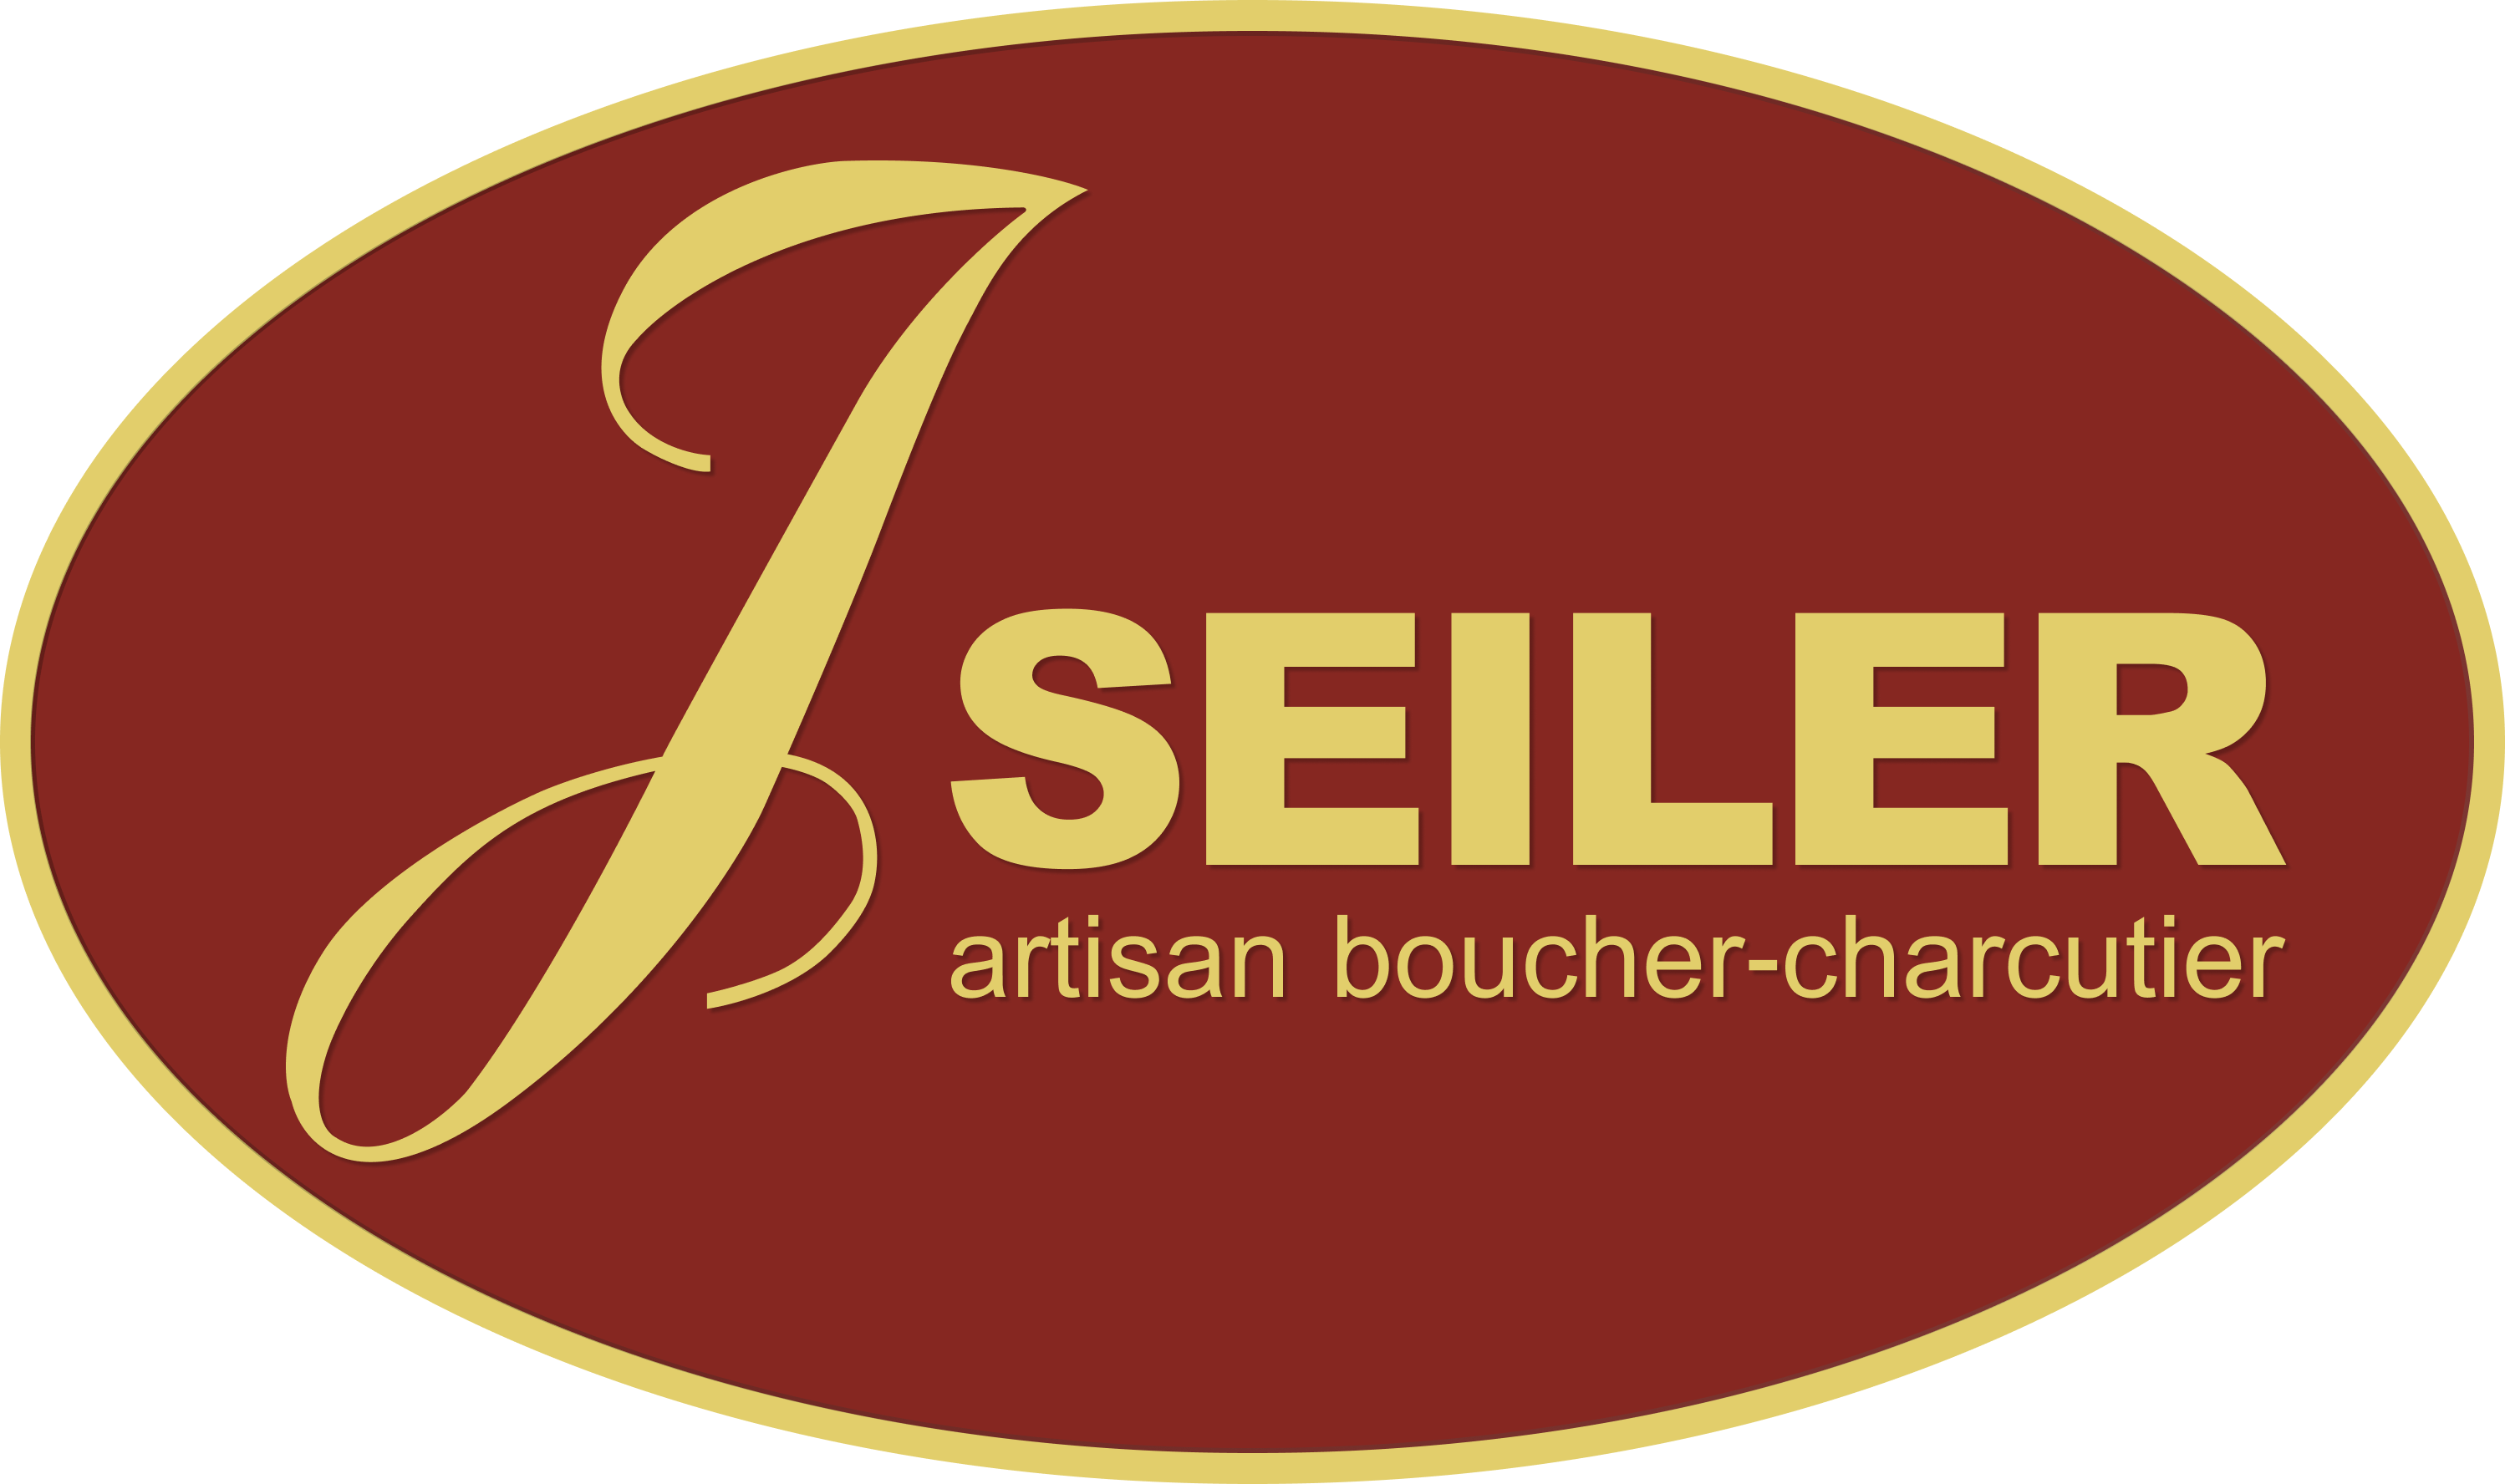 JSeiler_logo